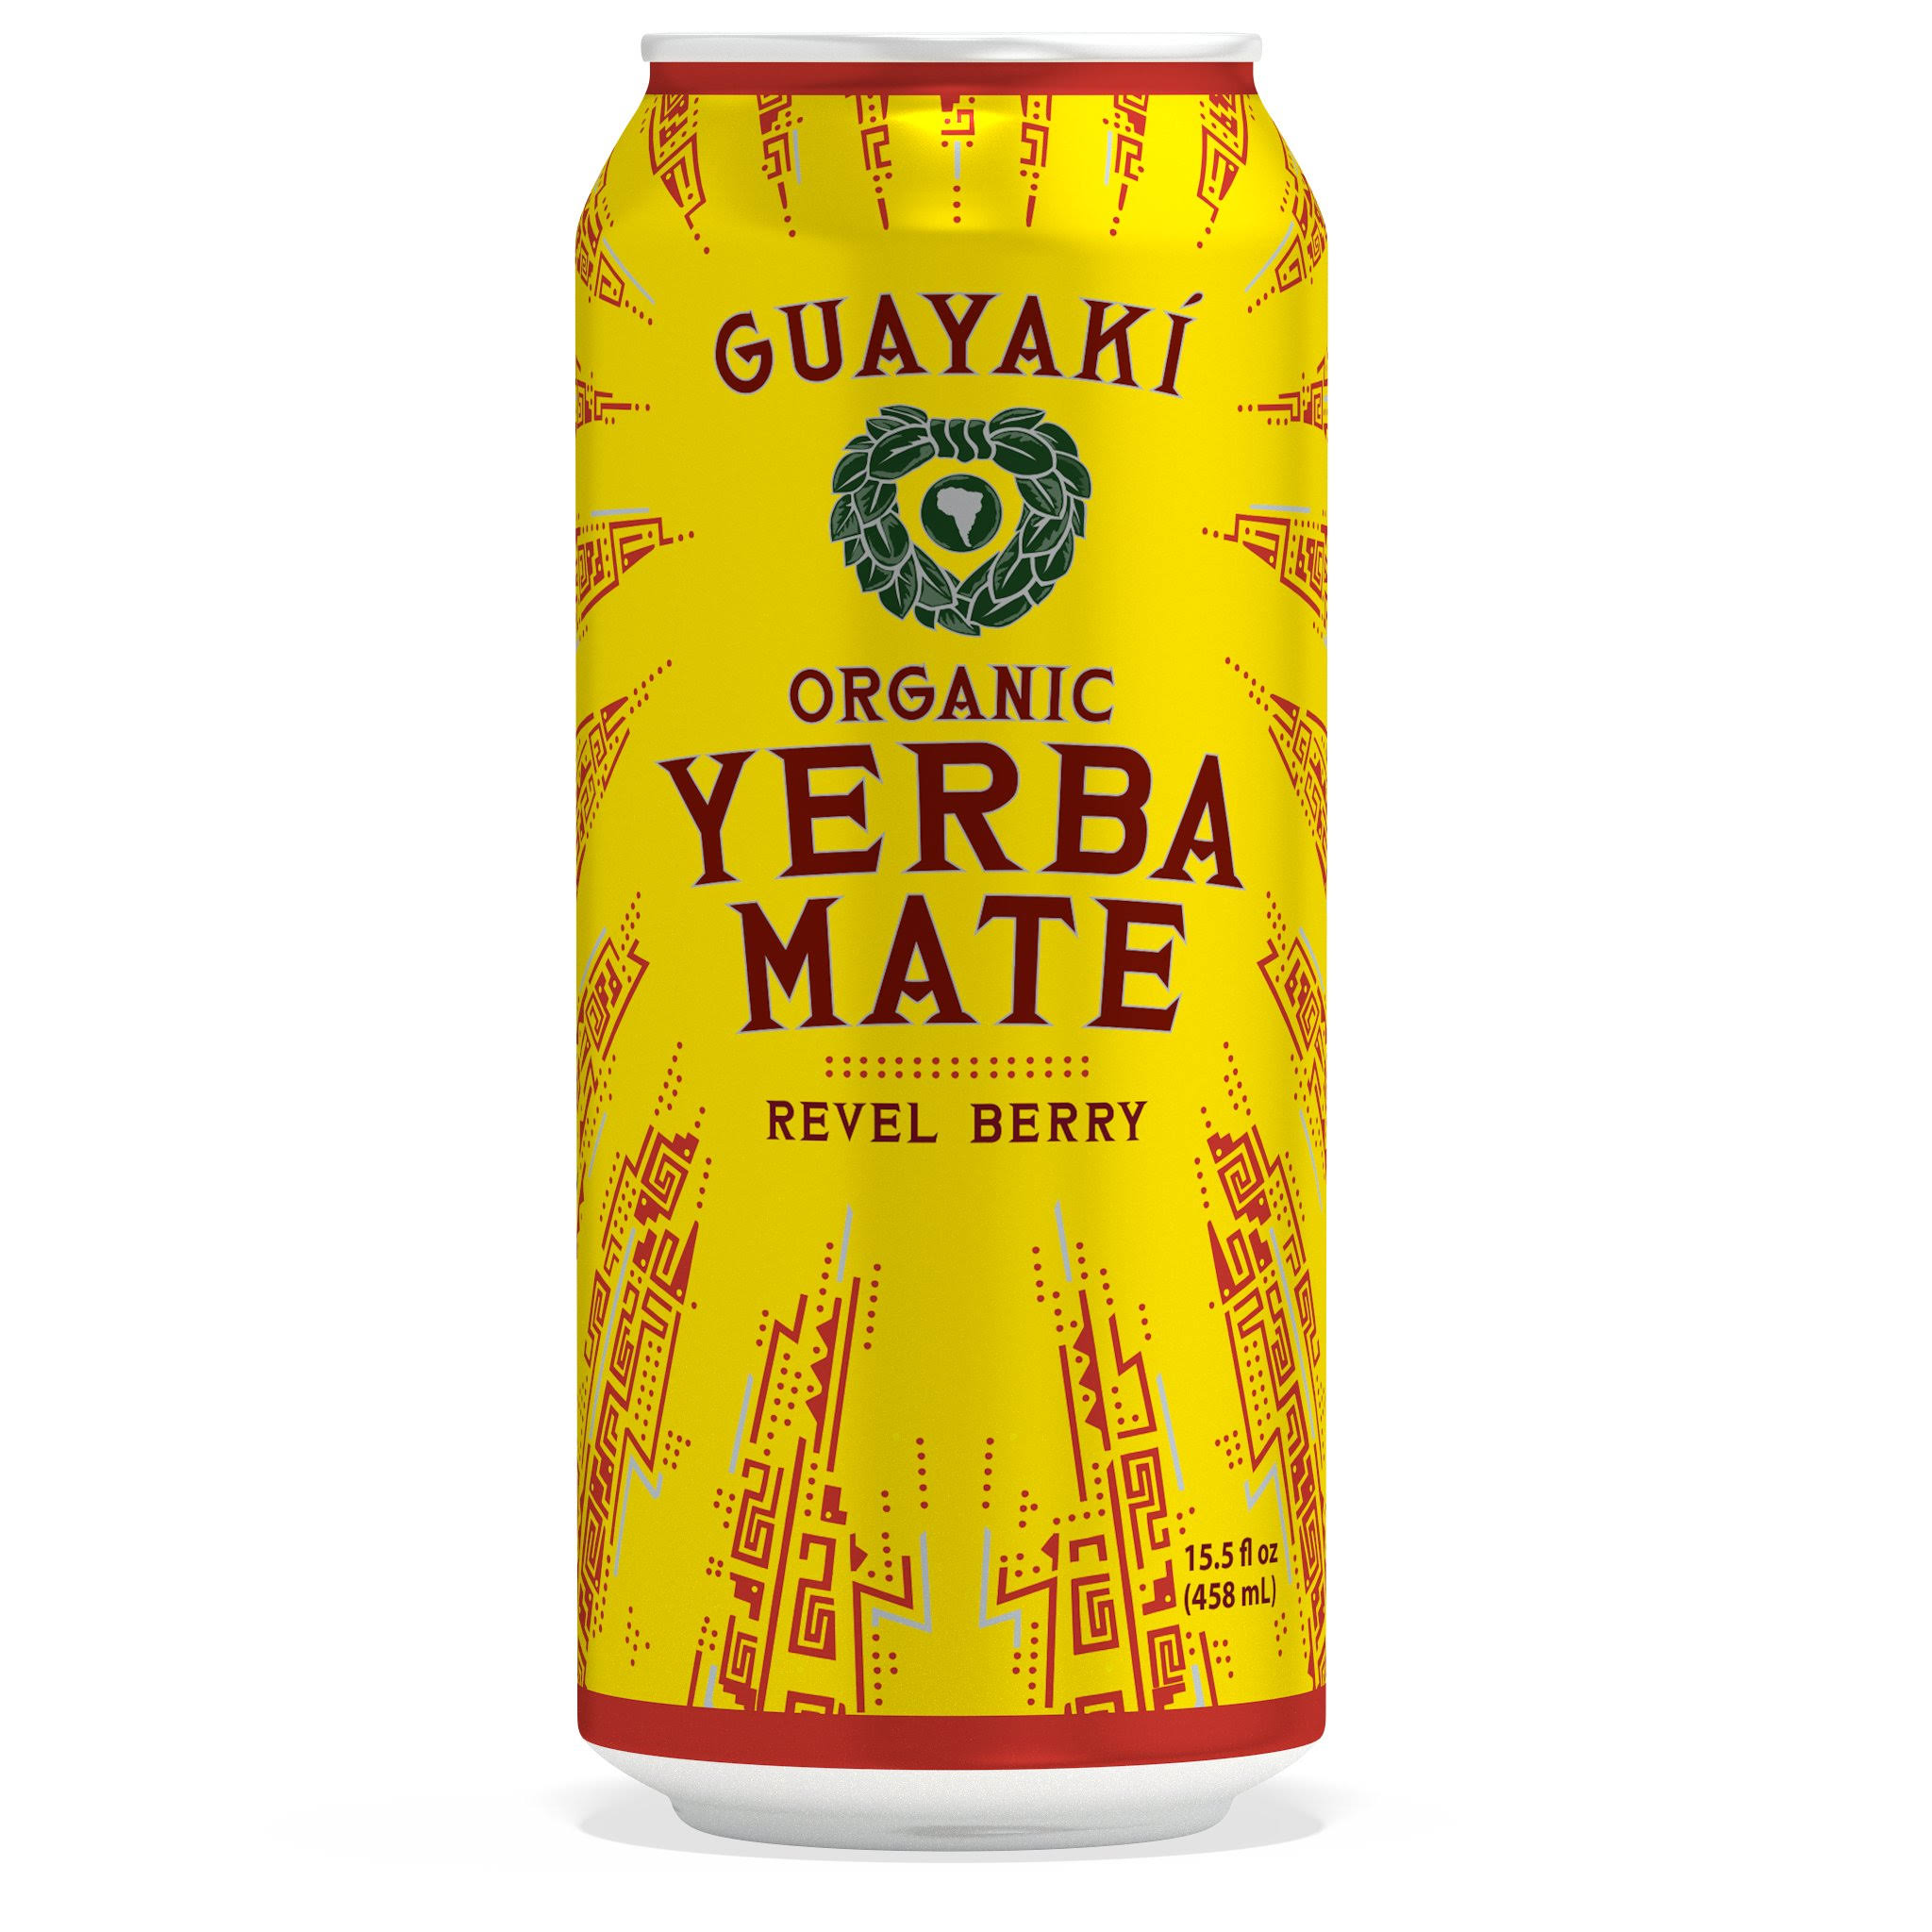 Guayaki Organic Yerba Mate - Revel Berry